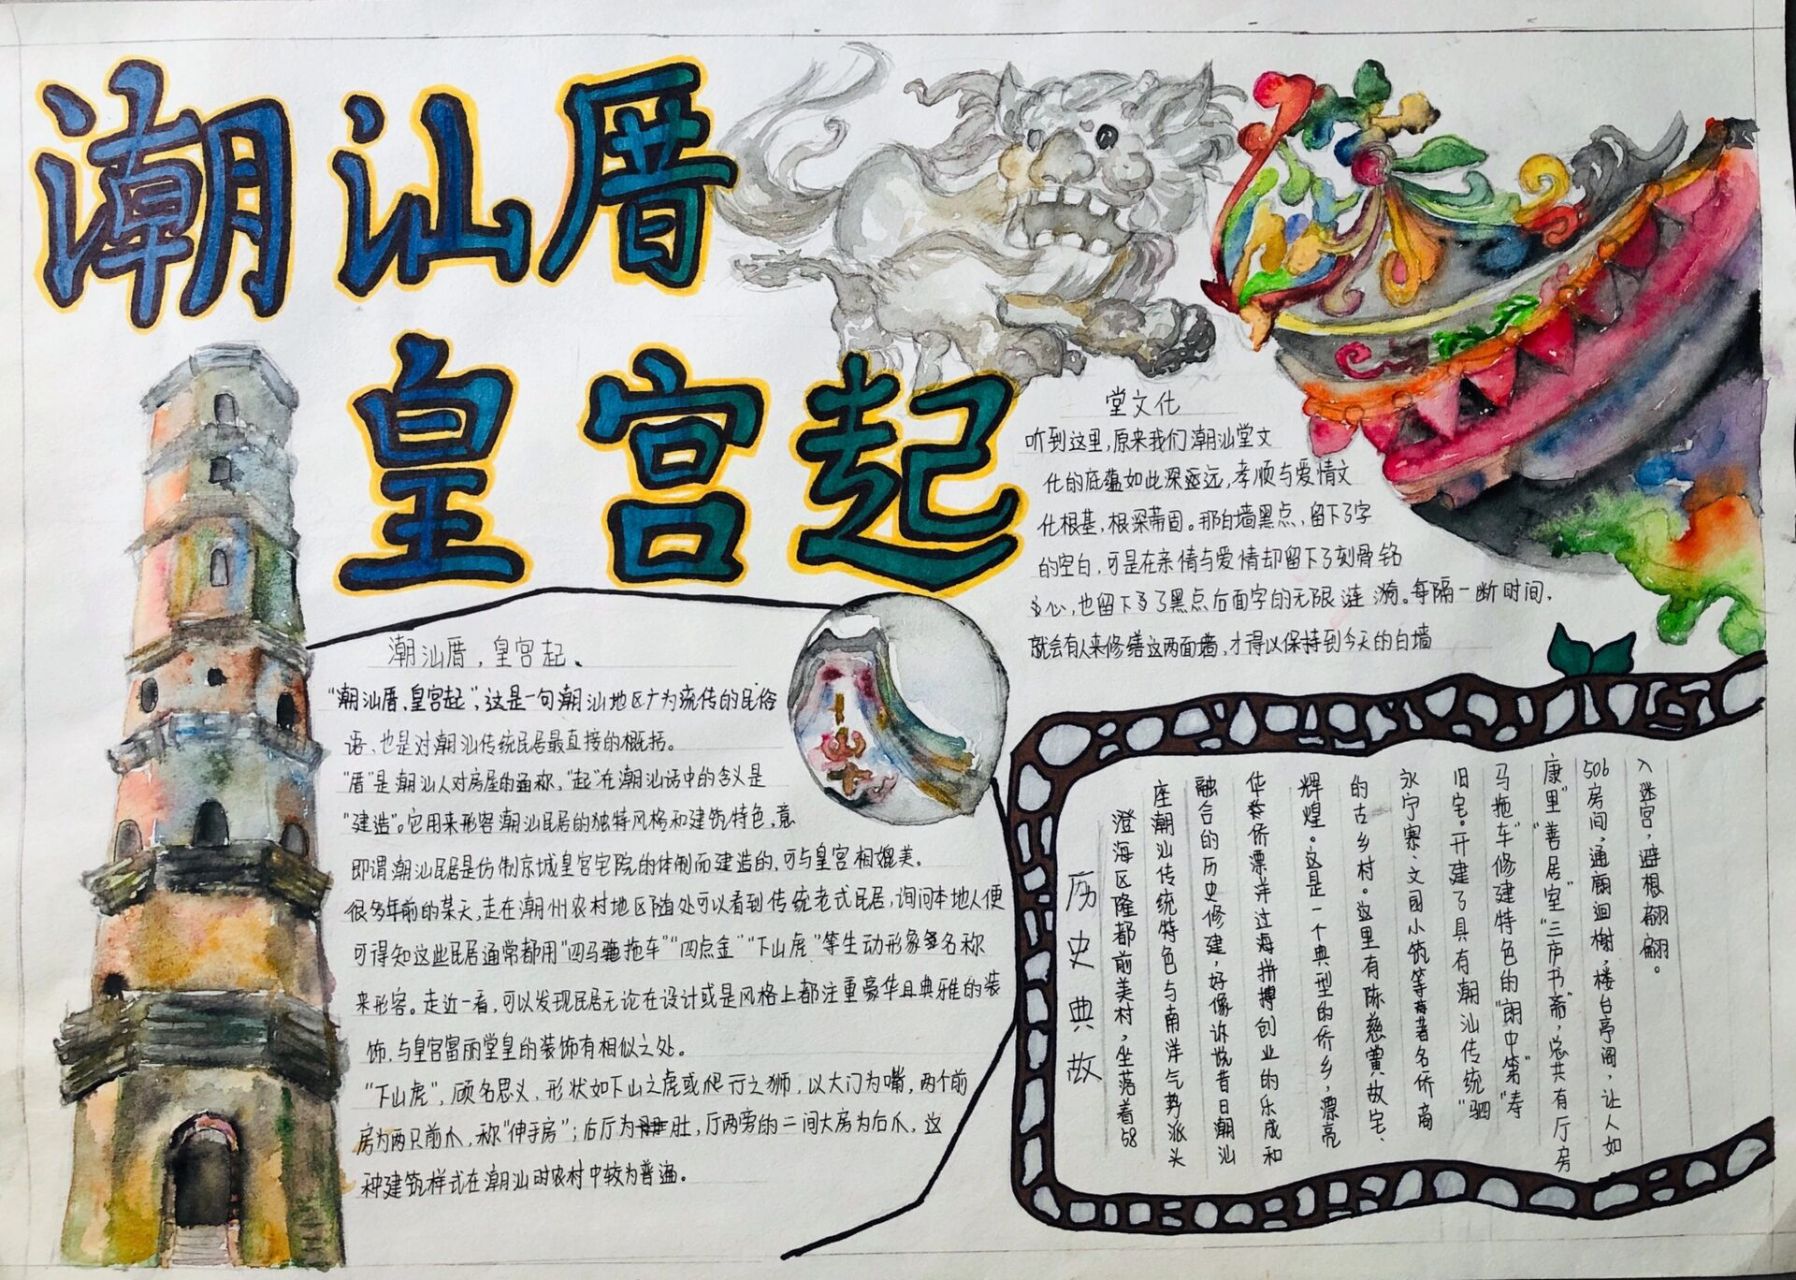 潮汕文化手抄报 一组关于潮汕文化的手抄报,涵盖了潮汕文化的建筑特色